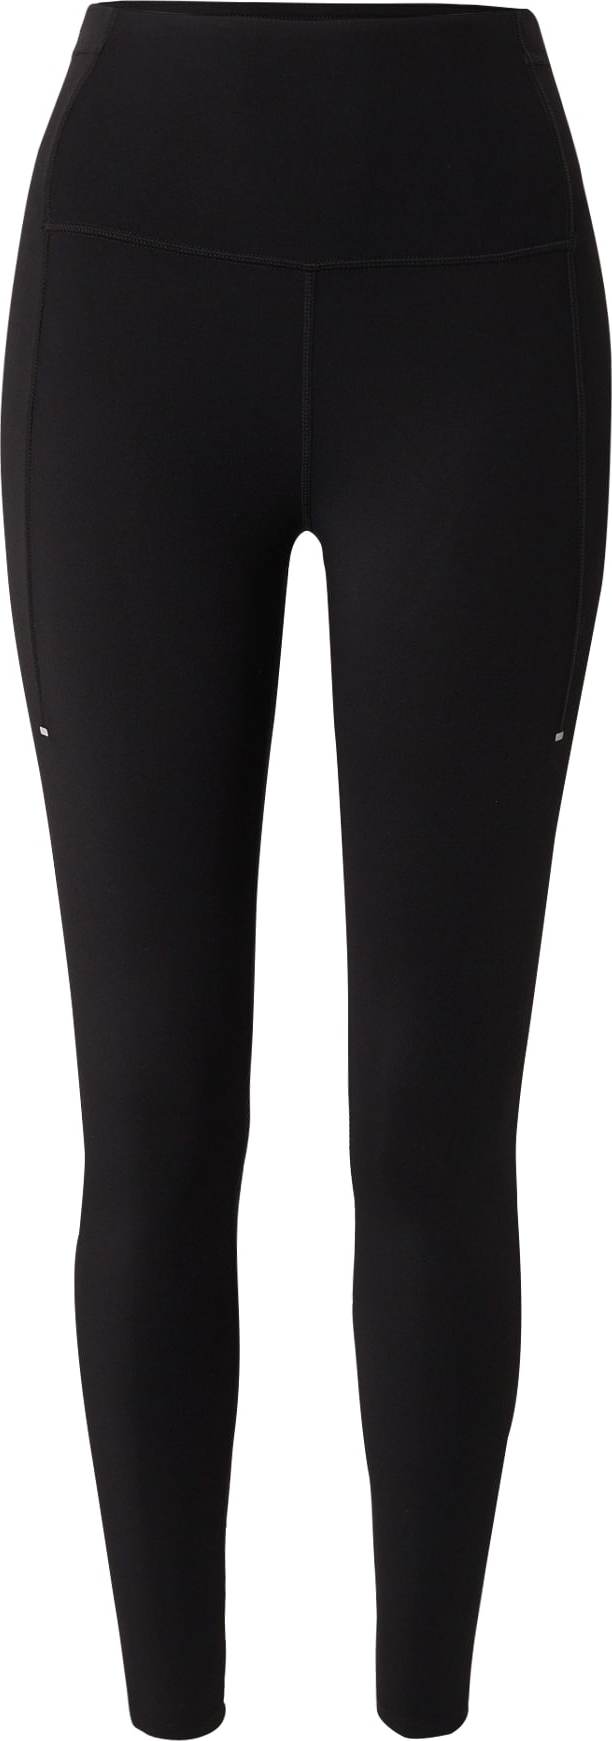 Sportovní kalhoty Yvette Sports černá / bílá